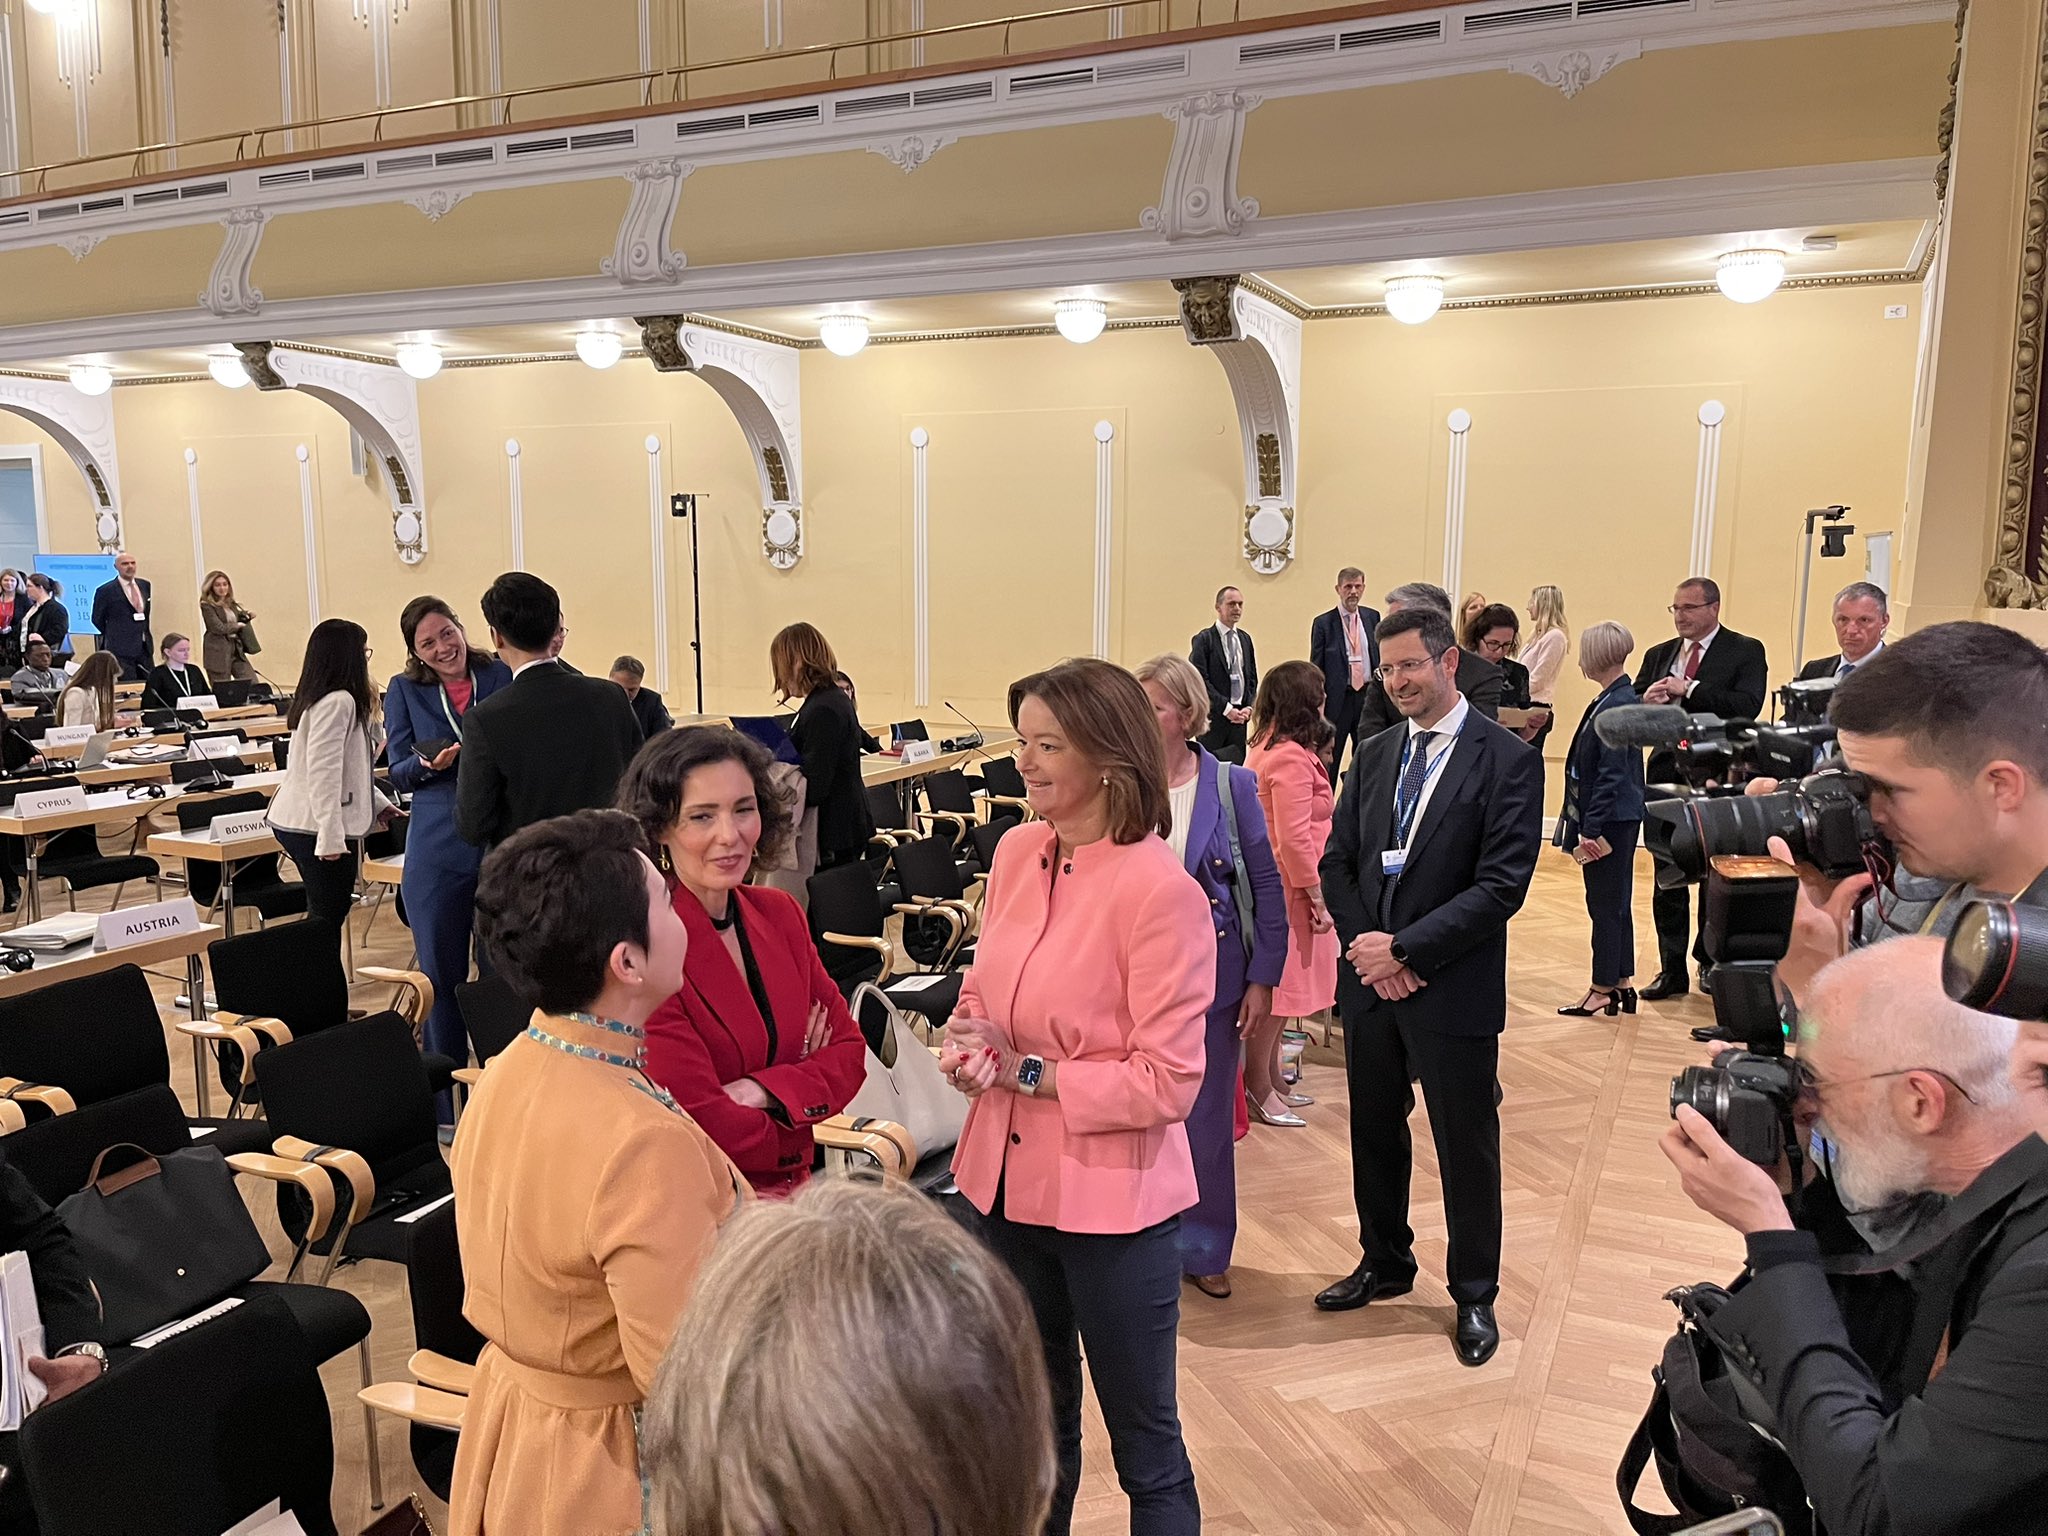 (V ŽIVO) Ljubljansko-haaška konvencija – Slovenija gosti diplomatsko konferenco za sprejem konvencije o sodelovanju pri pregonu genocida